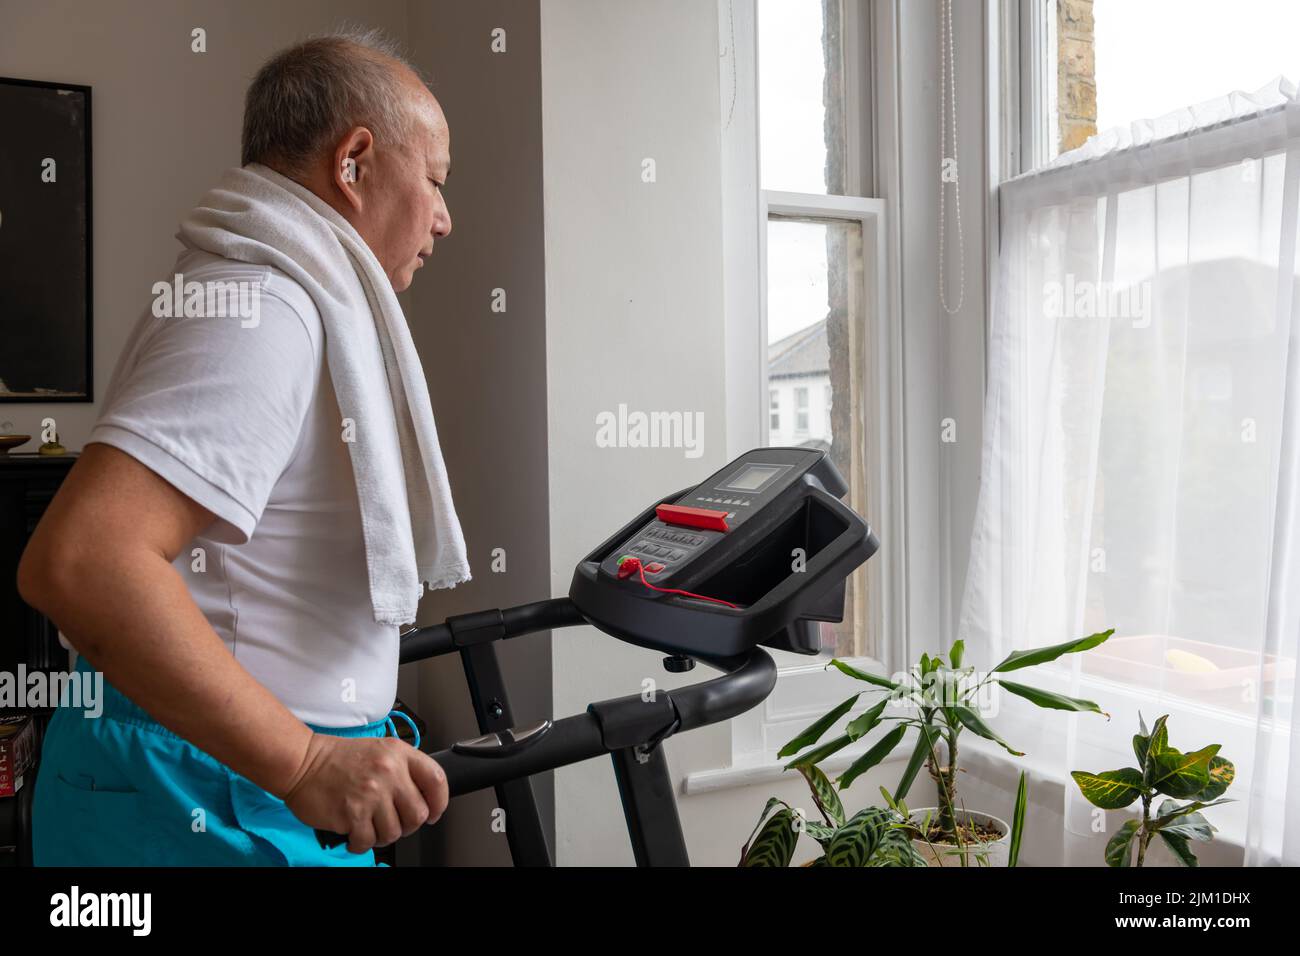 Ein älterer Mann, der zu Hause auf dem Laufband fit bleiben möchte. Stockfoto